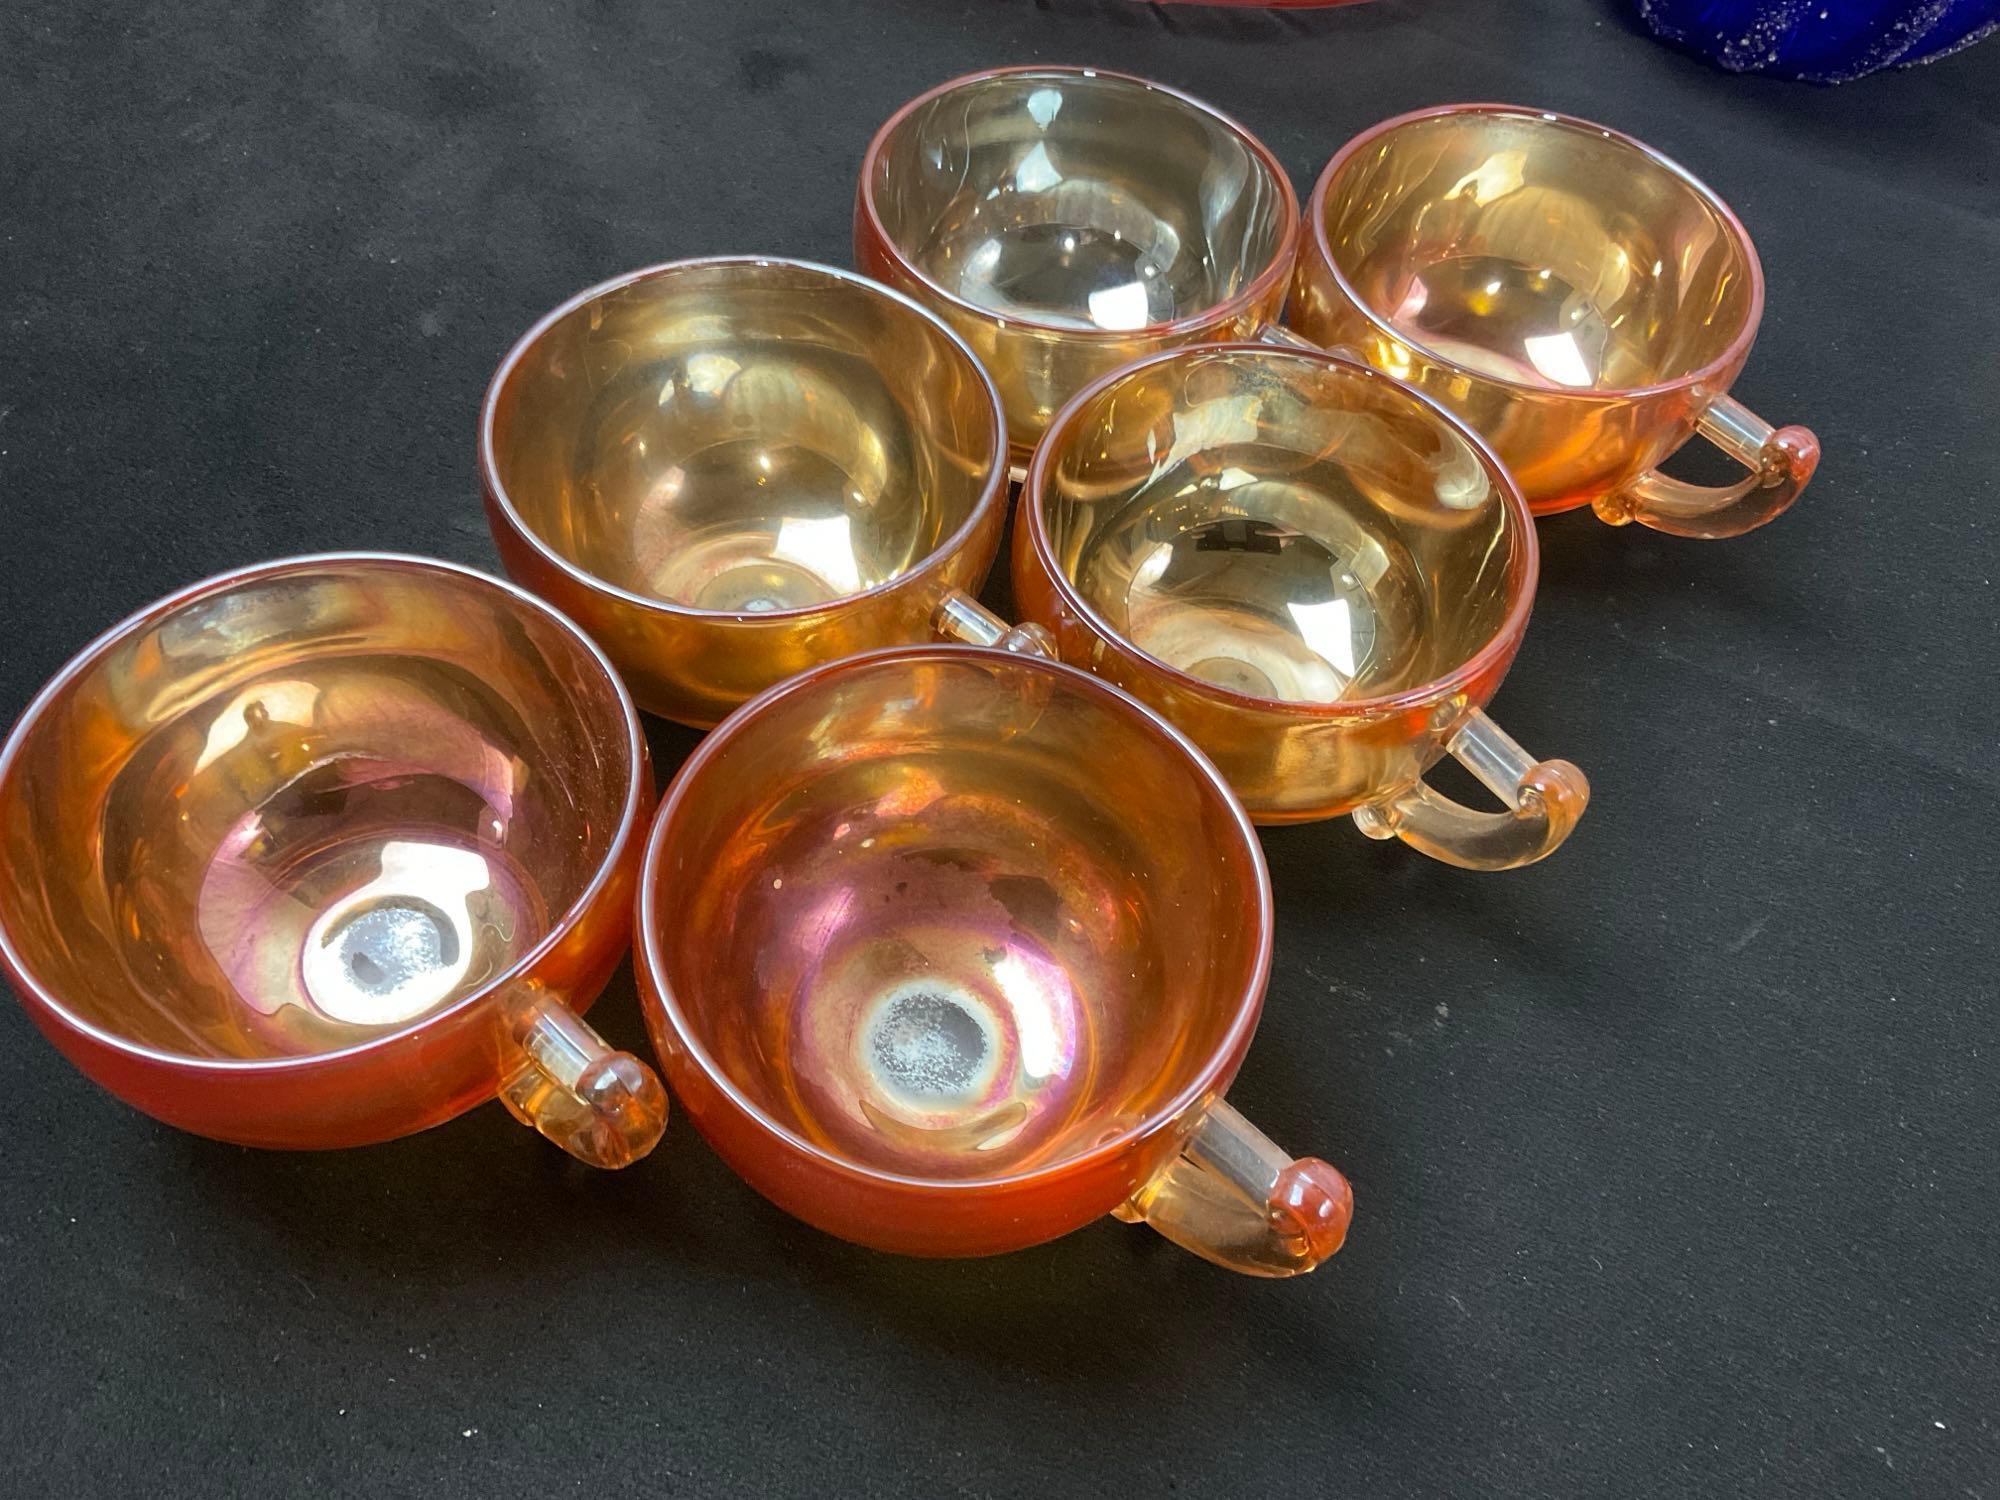 Carnival Glass 6x cups, Large Urn Vase, Depression Glass serving plate& Platter, Cobalt Blue Pump...